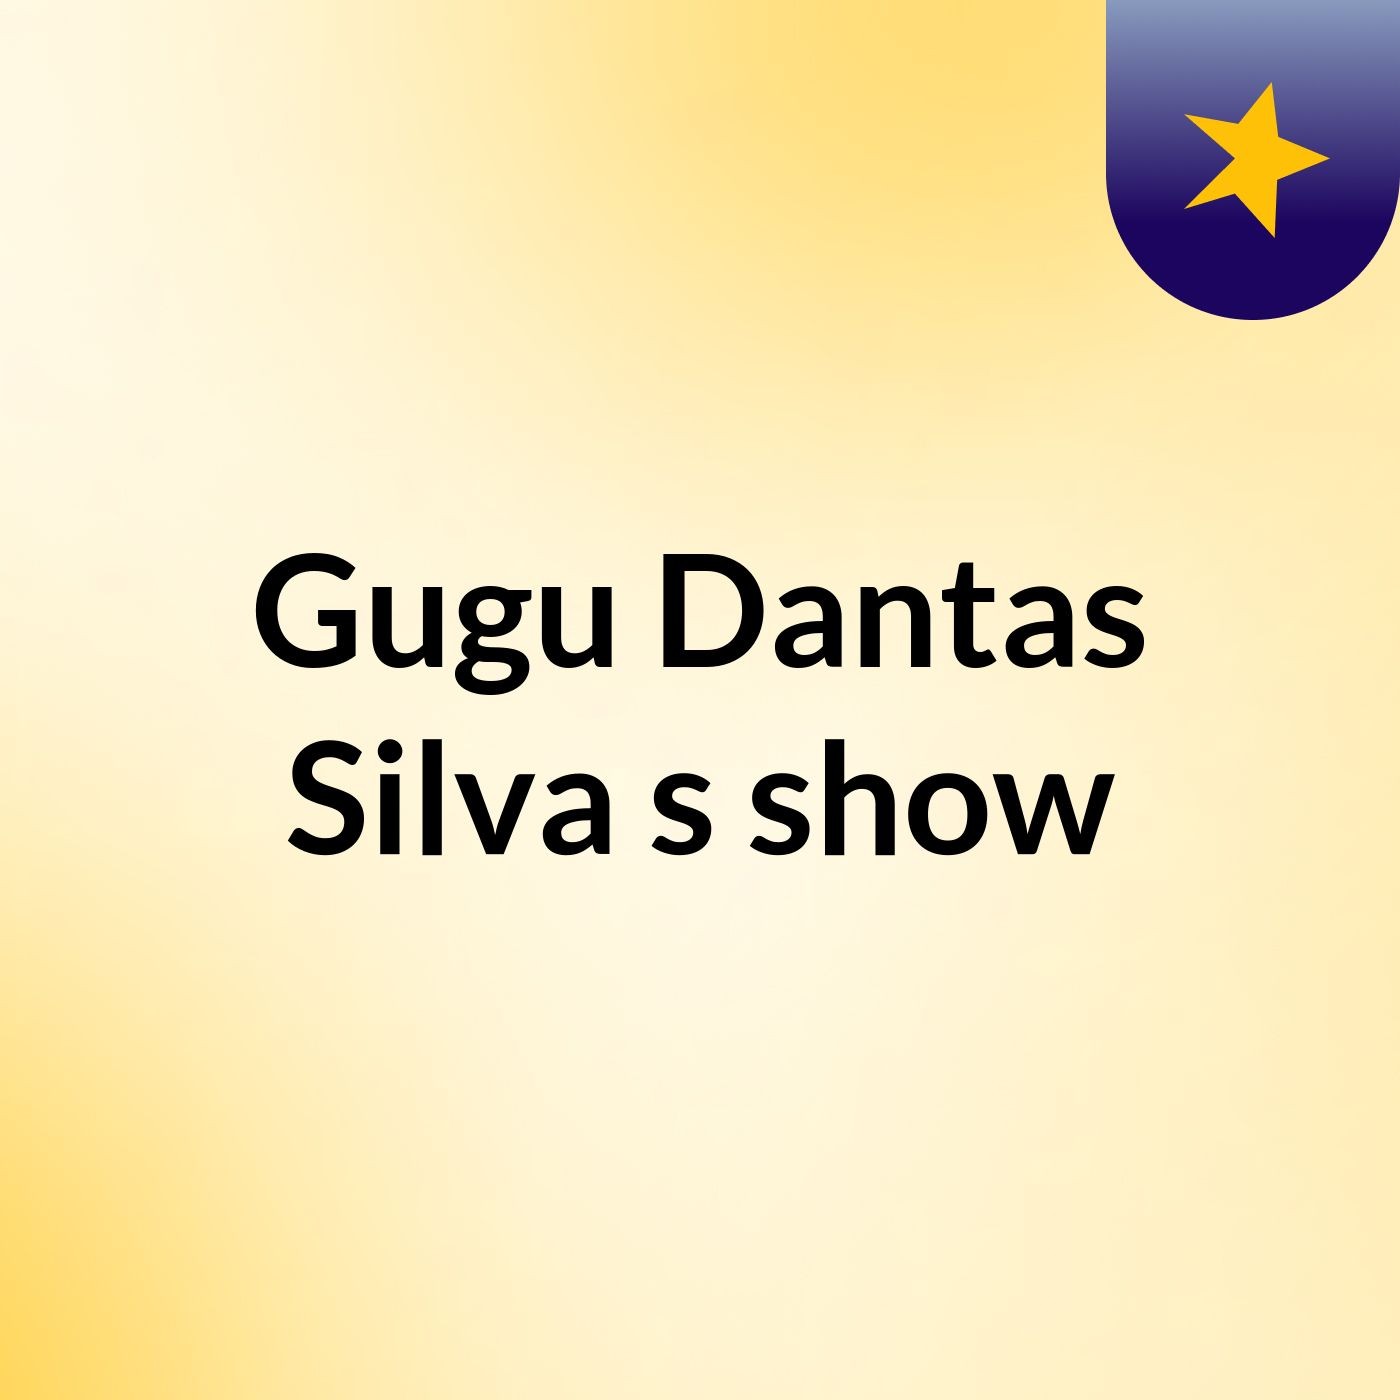 Gugu Dantas Silva's show